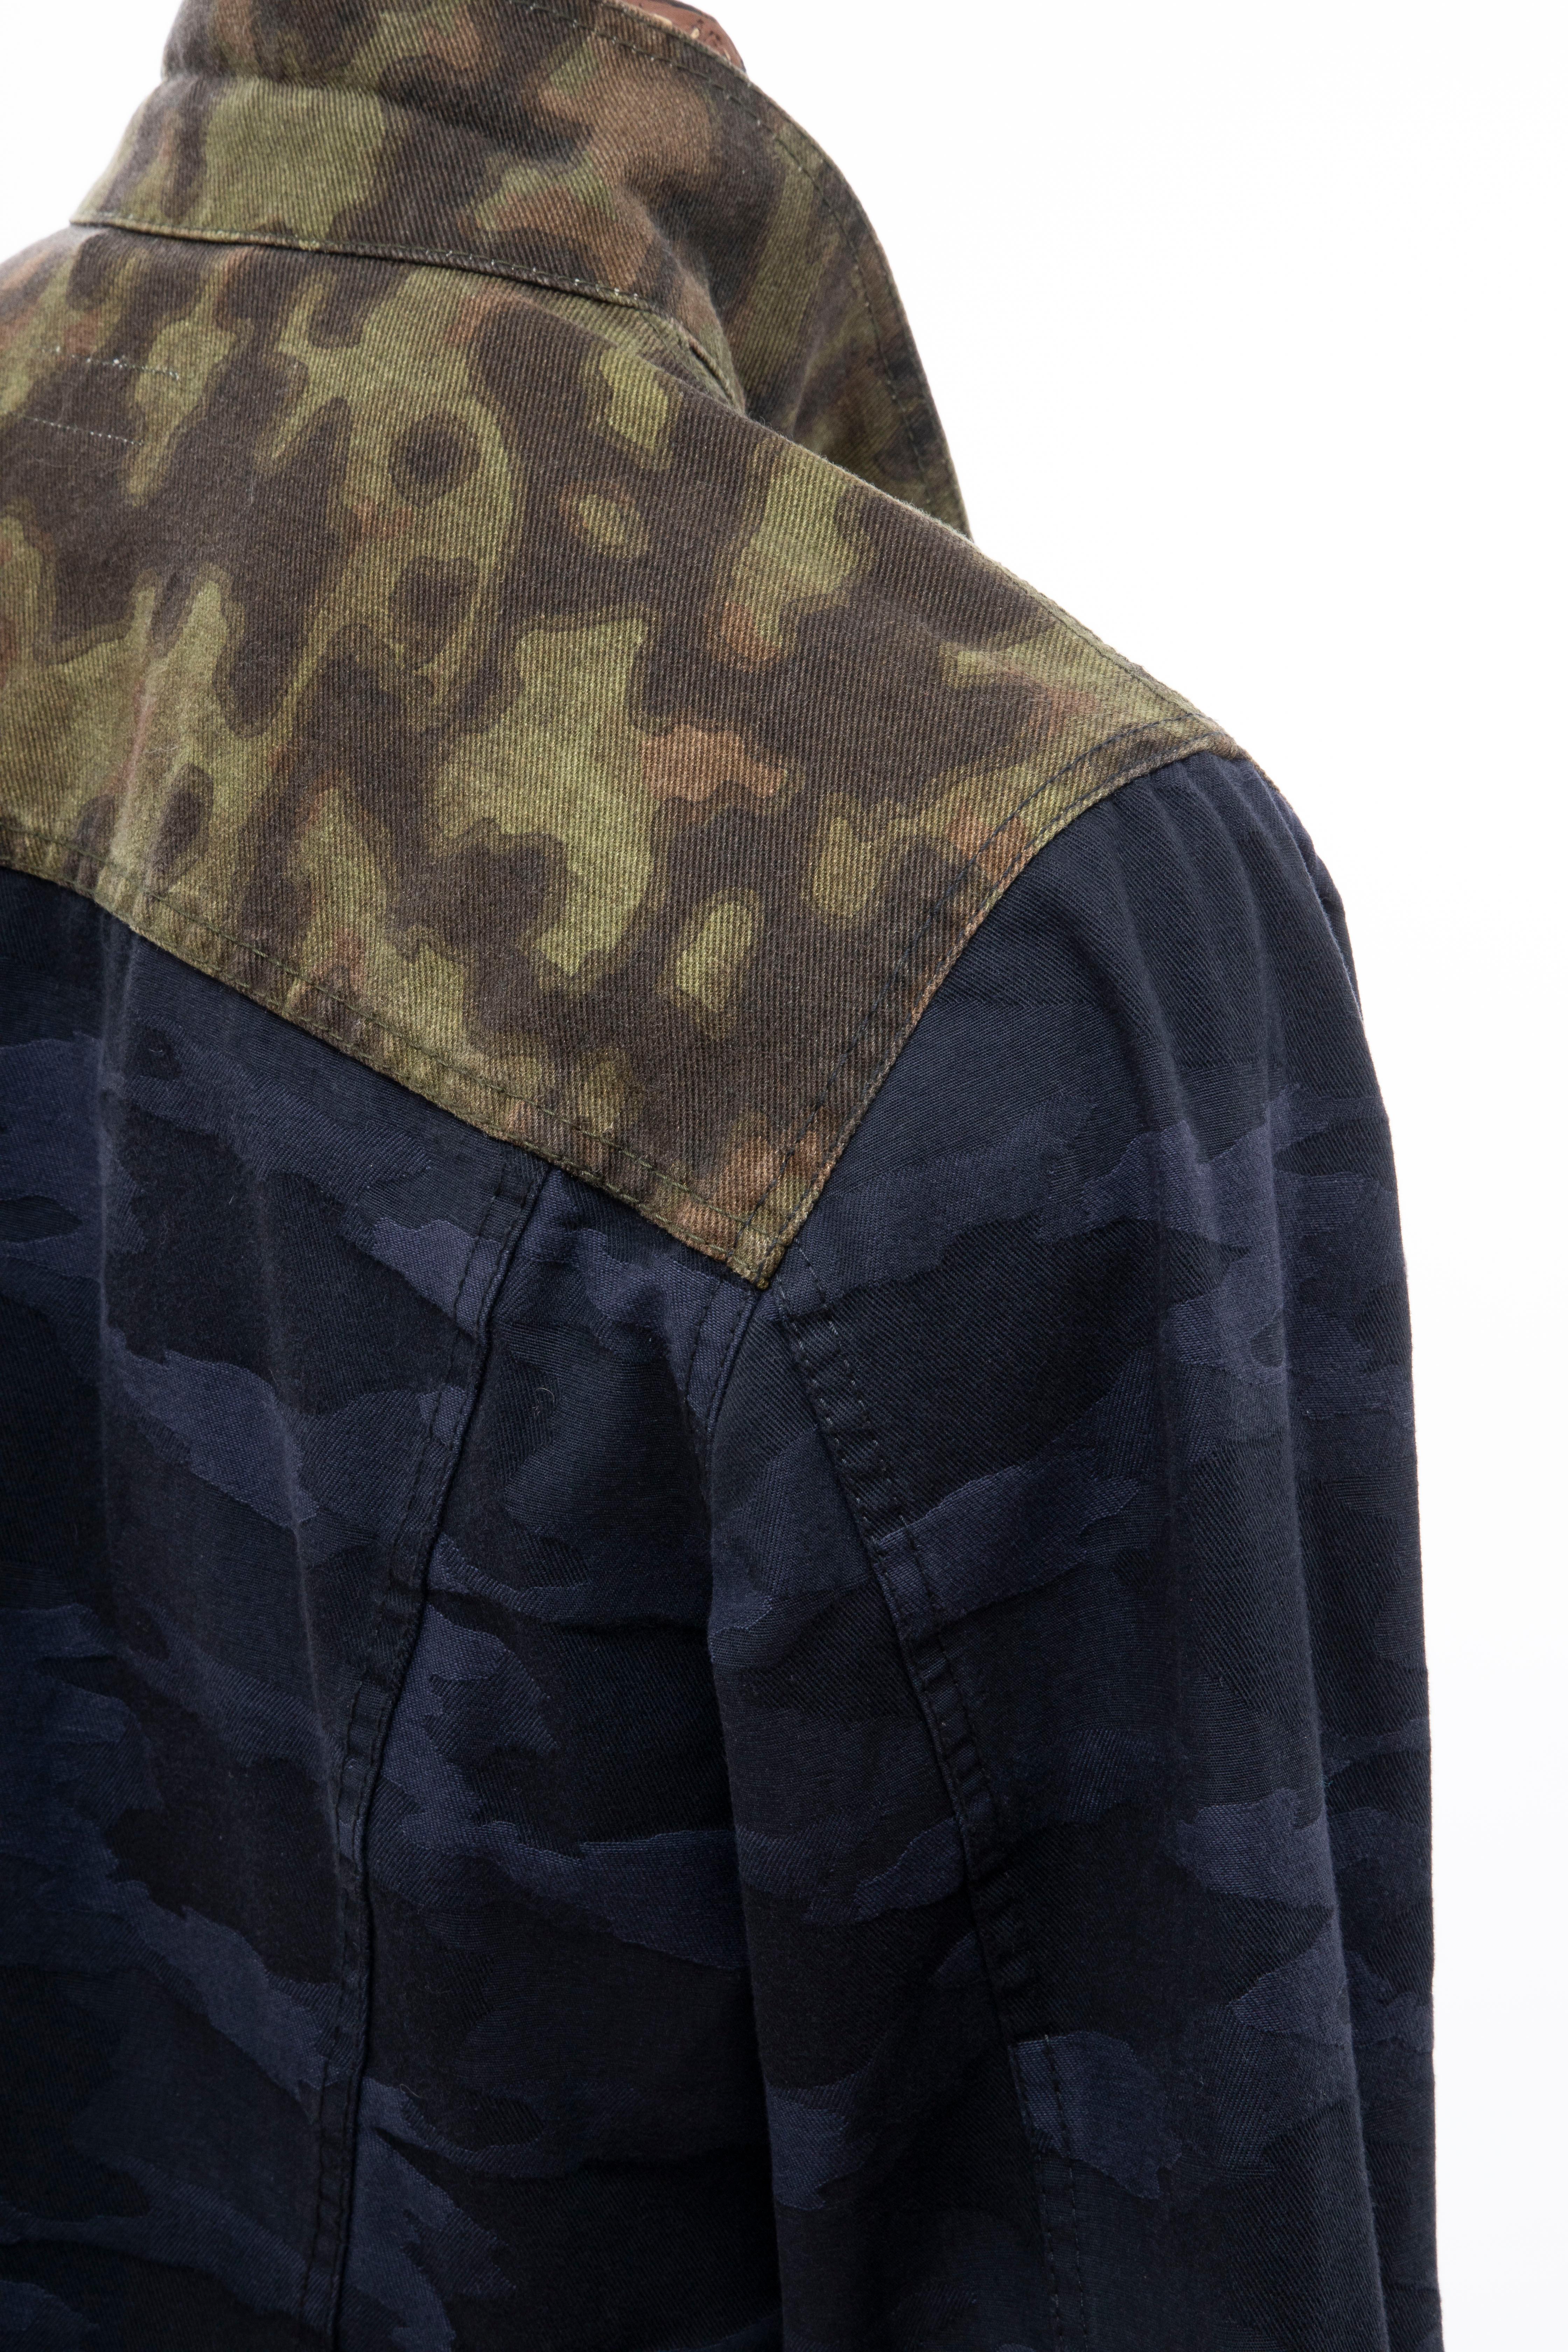 Dries van Noten Runway Men's Cotton Camouflage Chore Jacket, Spring 2013 3